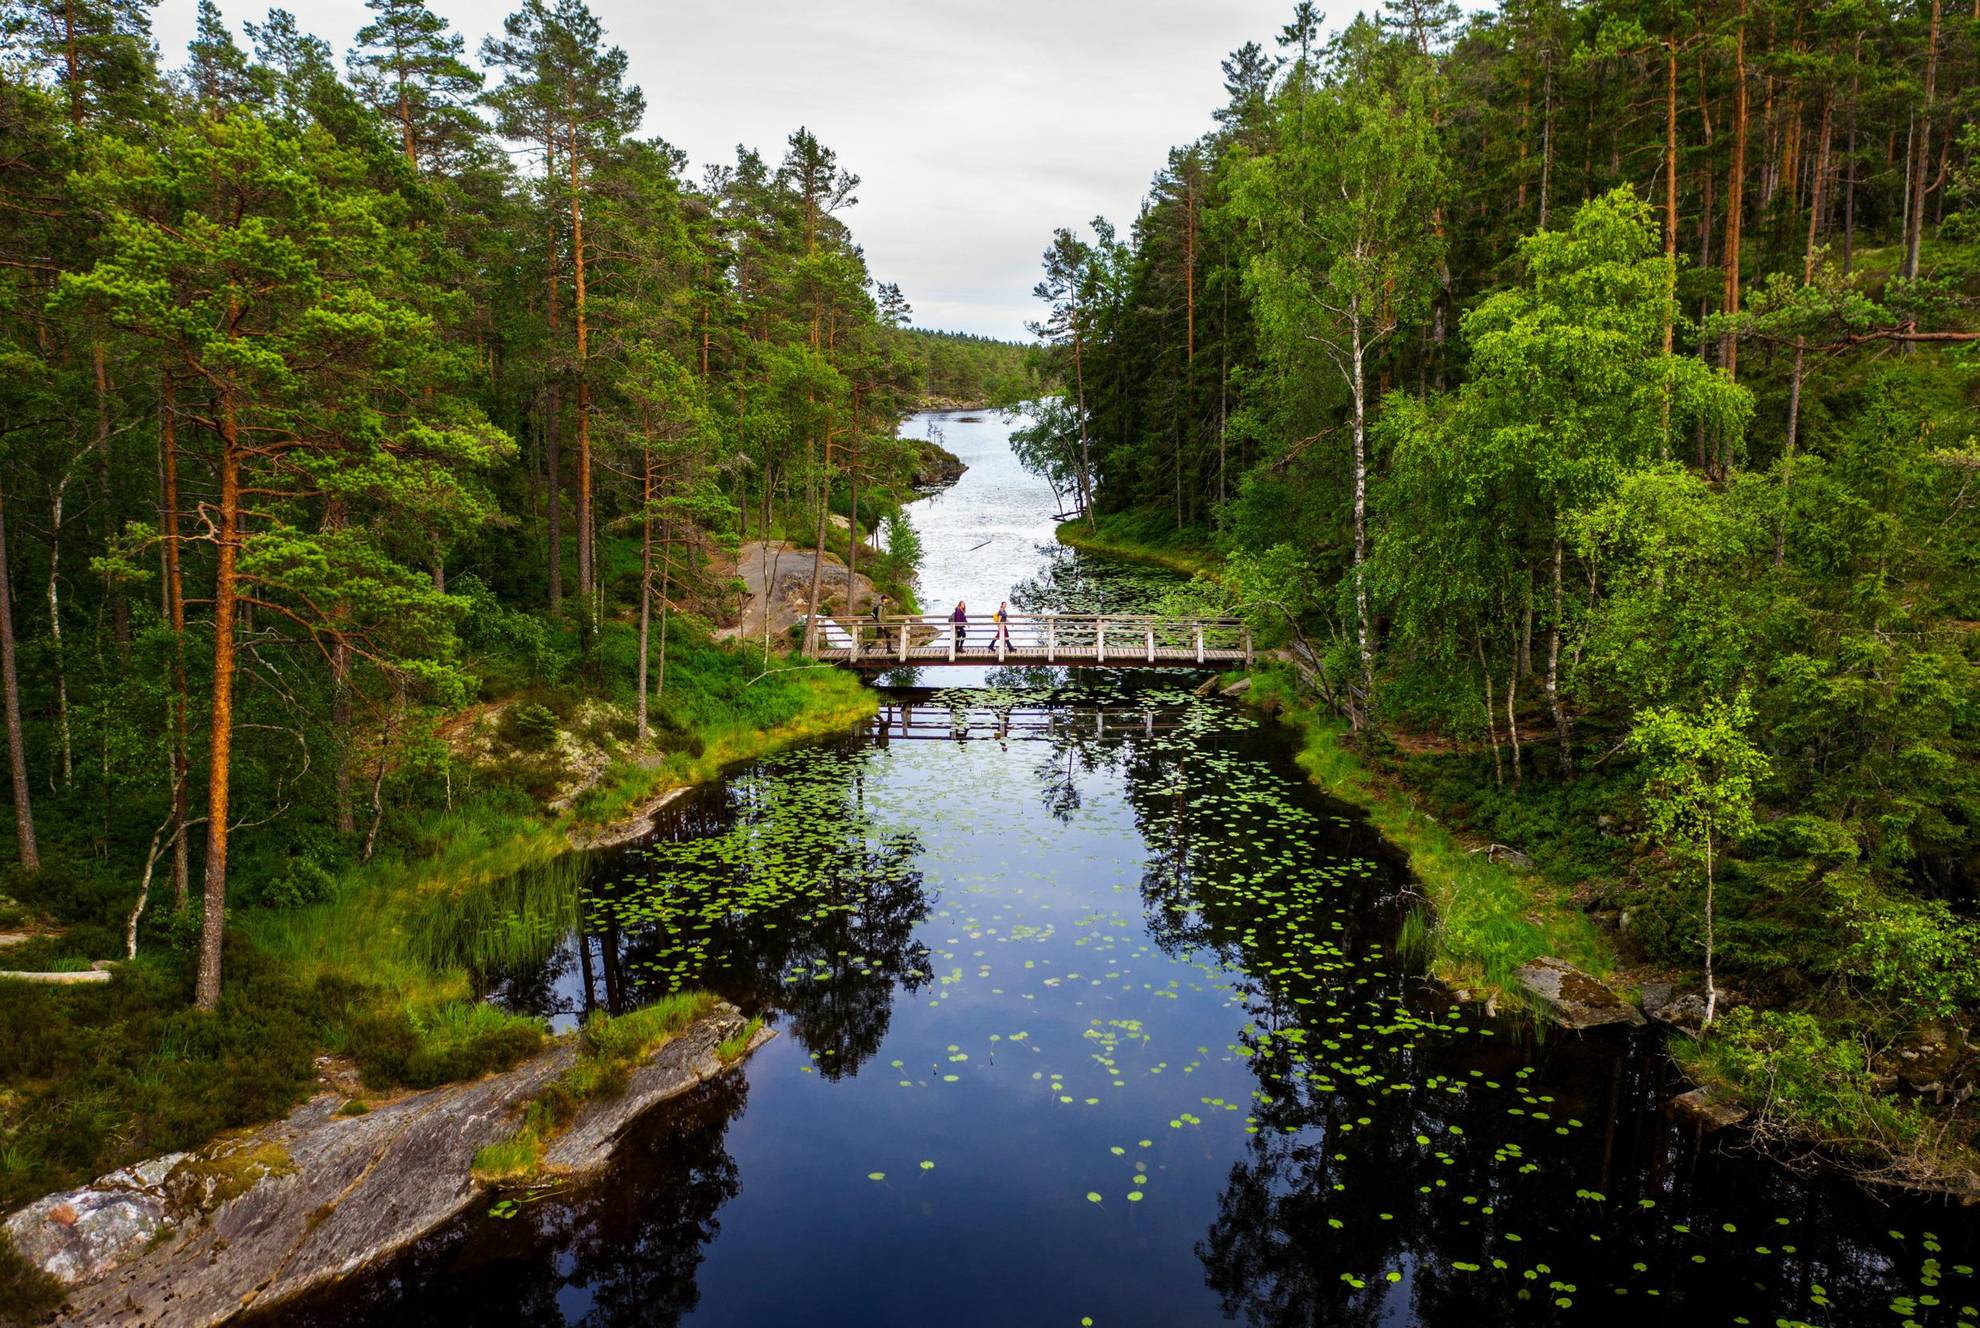 Trois personnes marchent sur un pont en bois étroit au-dessus d'un lac. La forêt borde les deux rives du lac.